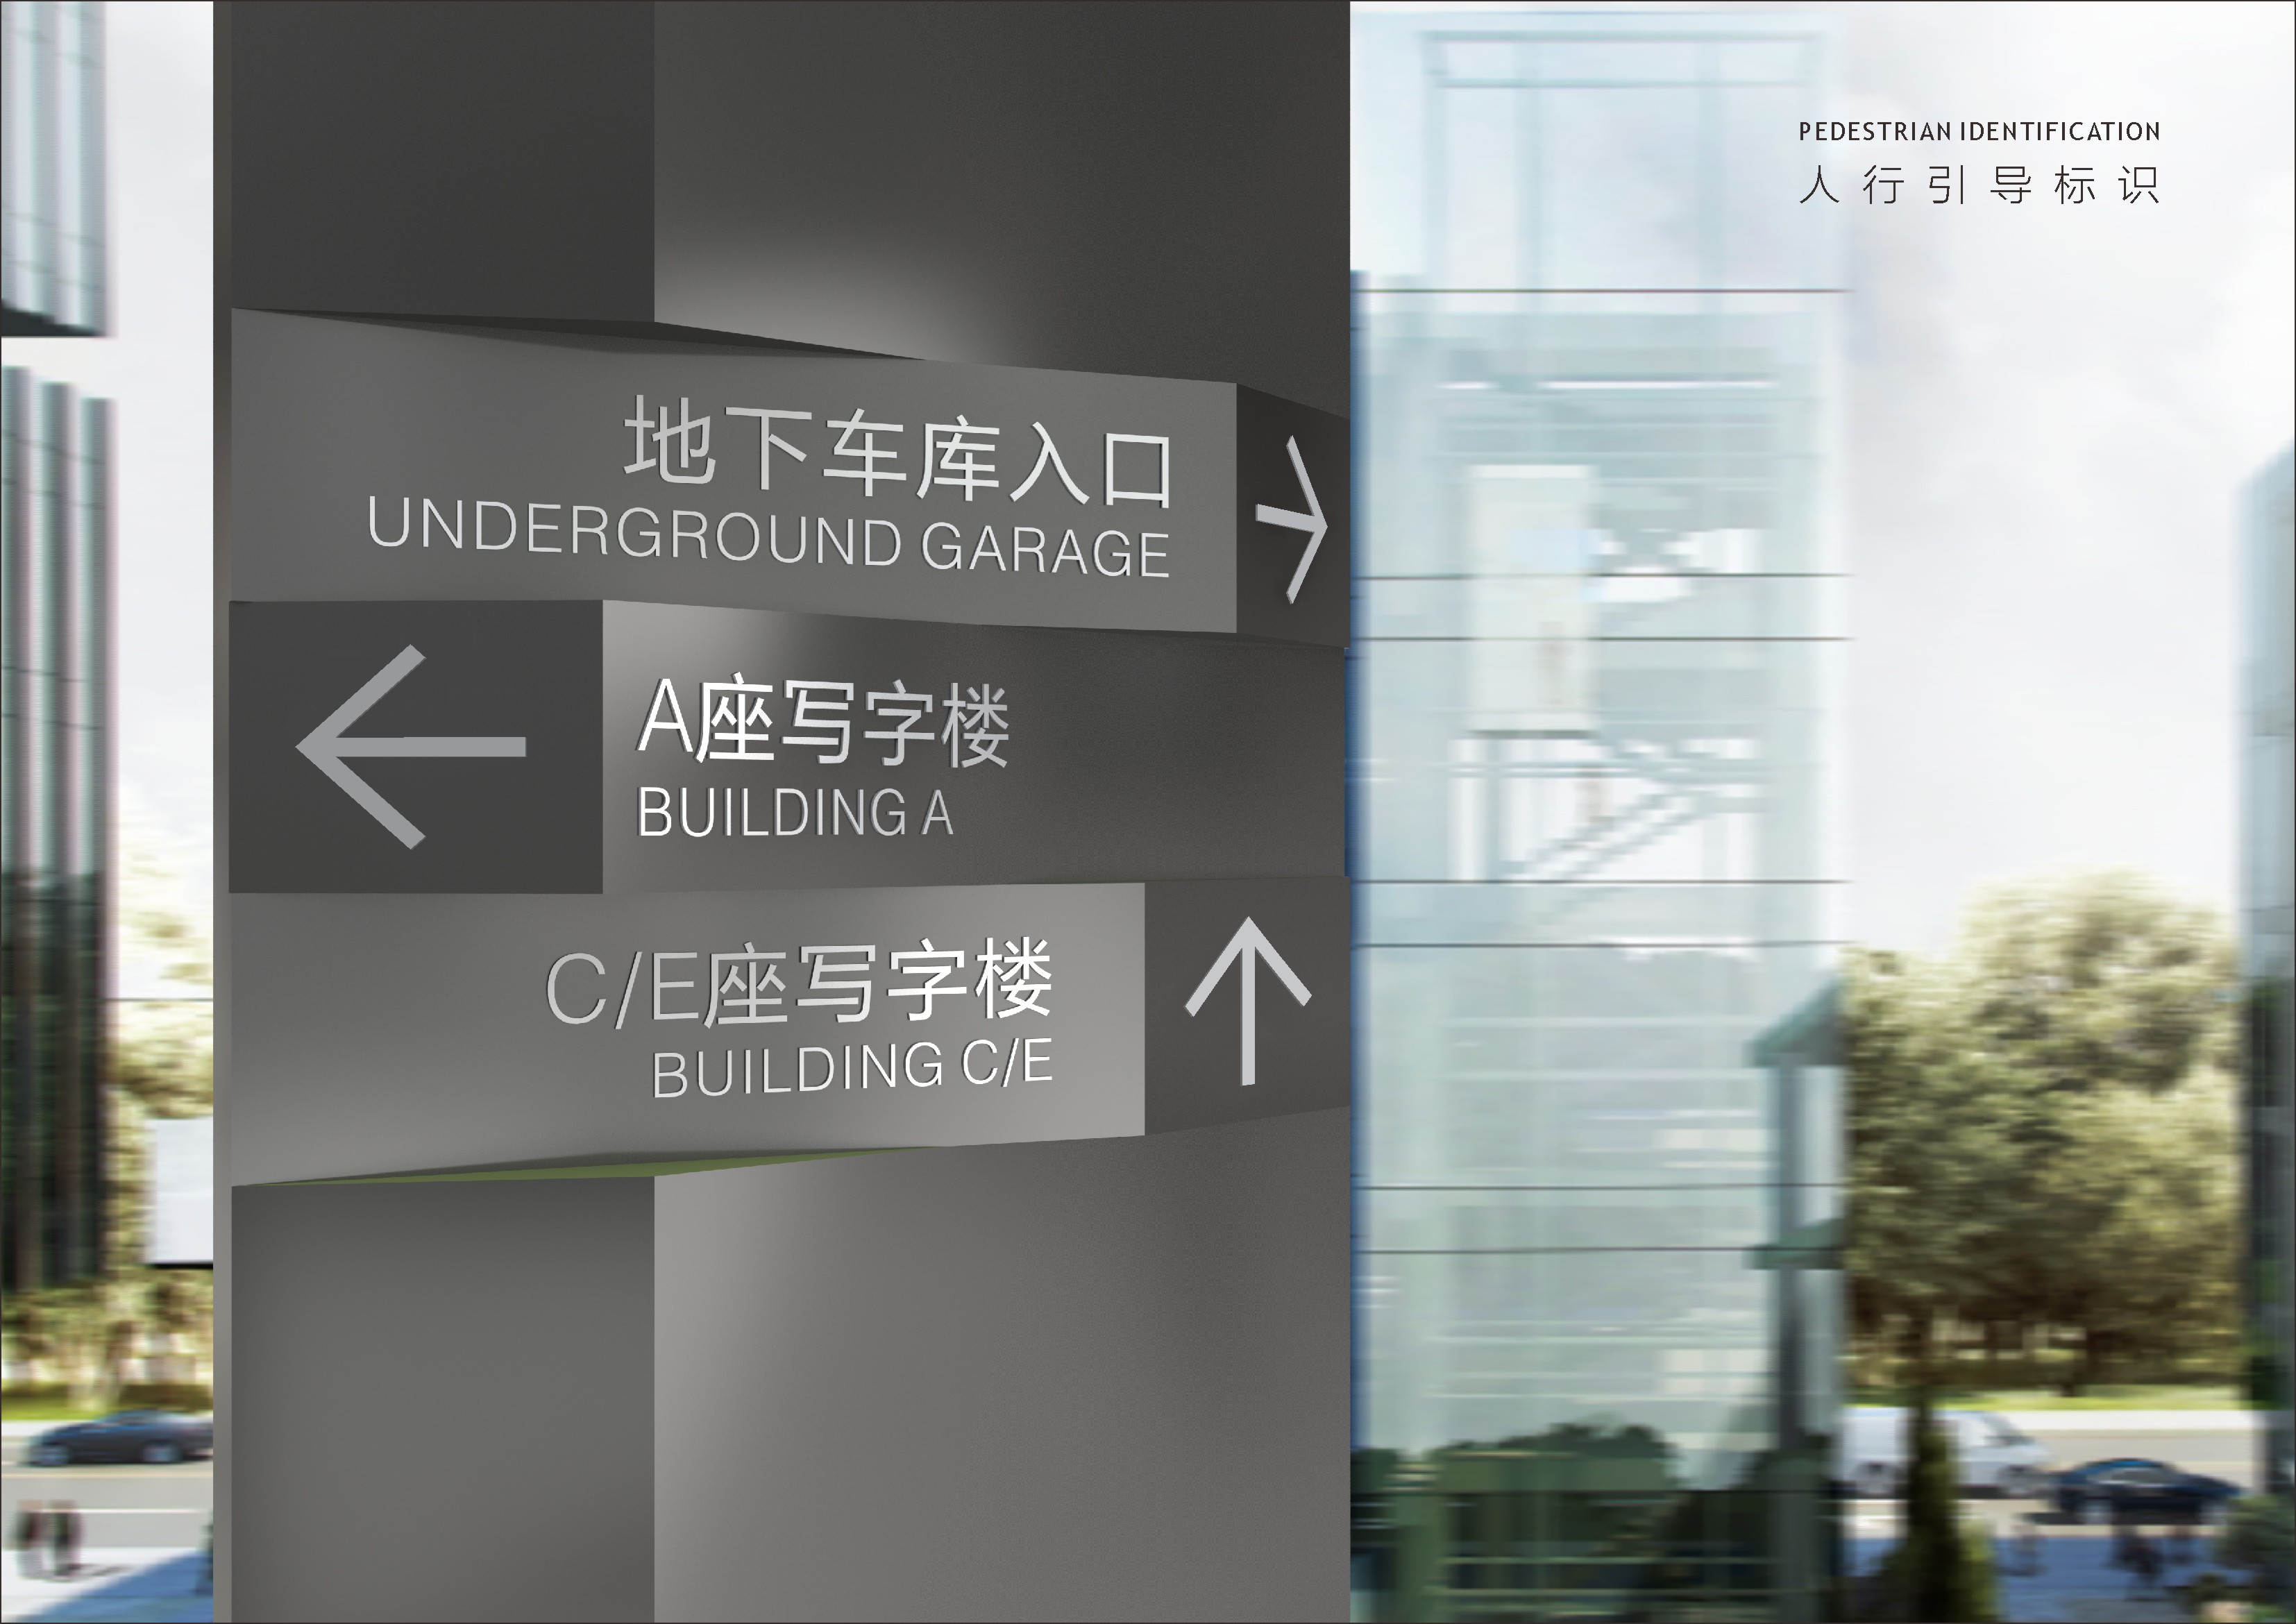 上海首建中心_标识导视系统概念设计方案_180508.cdr_0066.JPG